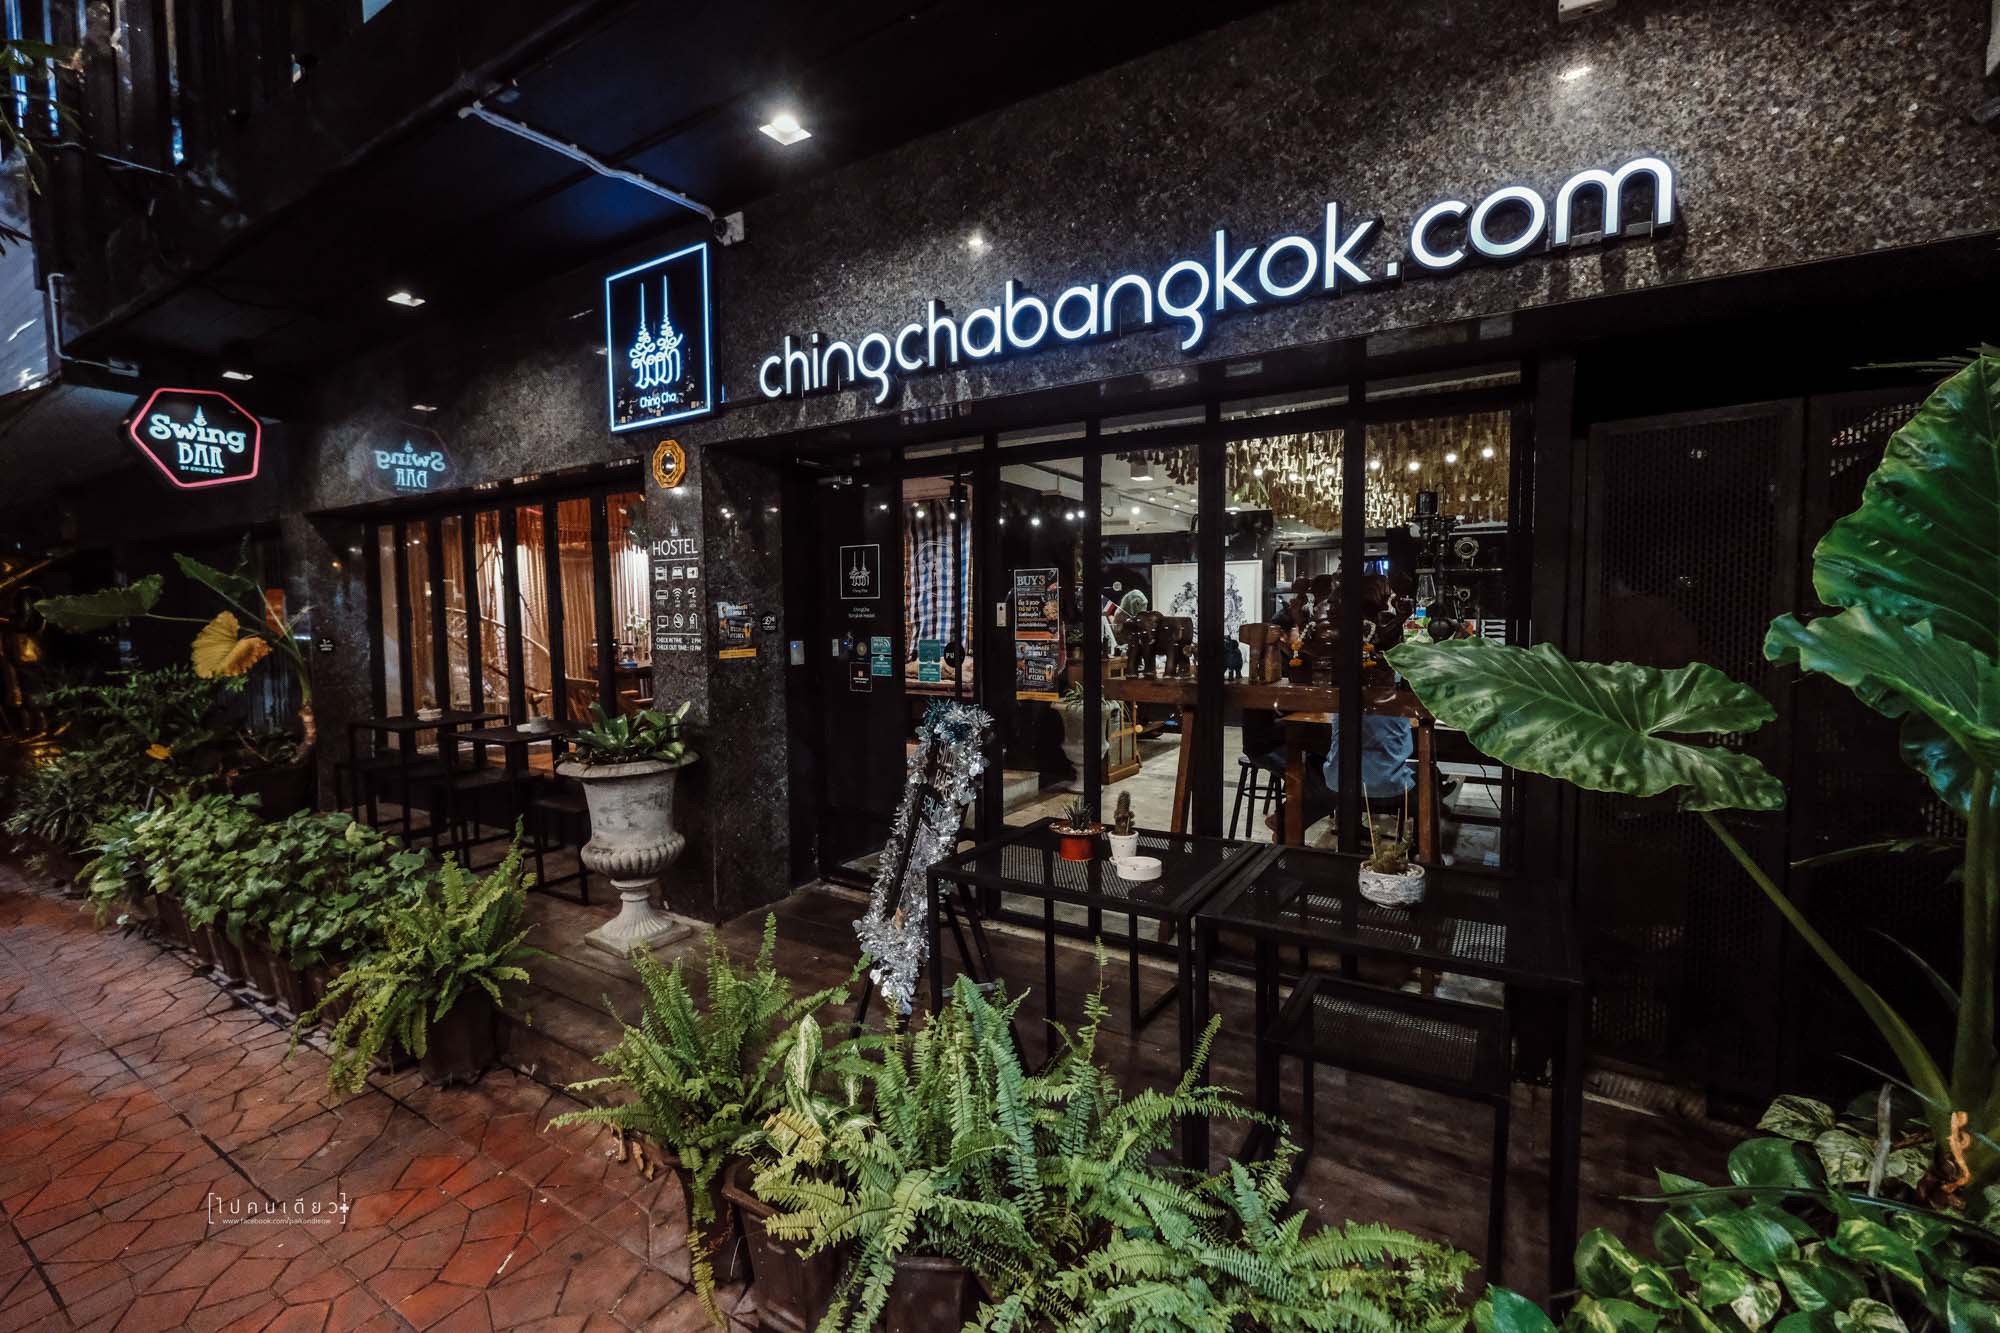 SwingBar, Swing Bar by Ching Cha, Swing Bar Bangkok, Hangout, บาร์ลับ, บาร์บนดาดฟ้า, ร้านลับๆ บนดาดฟ้า, เสาชิงช้า, วัดสุทัศน์, ภูเขาทอง, ร้านน่านั่ง, รีวิวกรุงเทพฯ